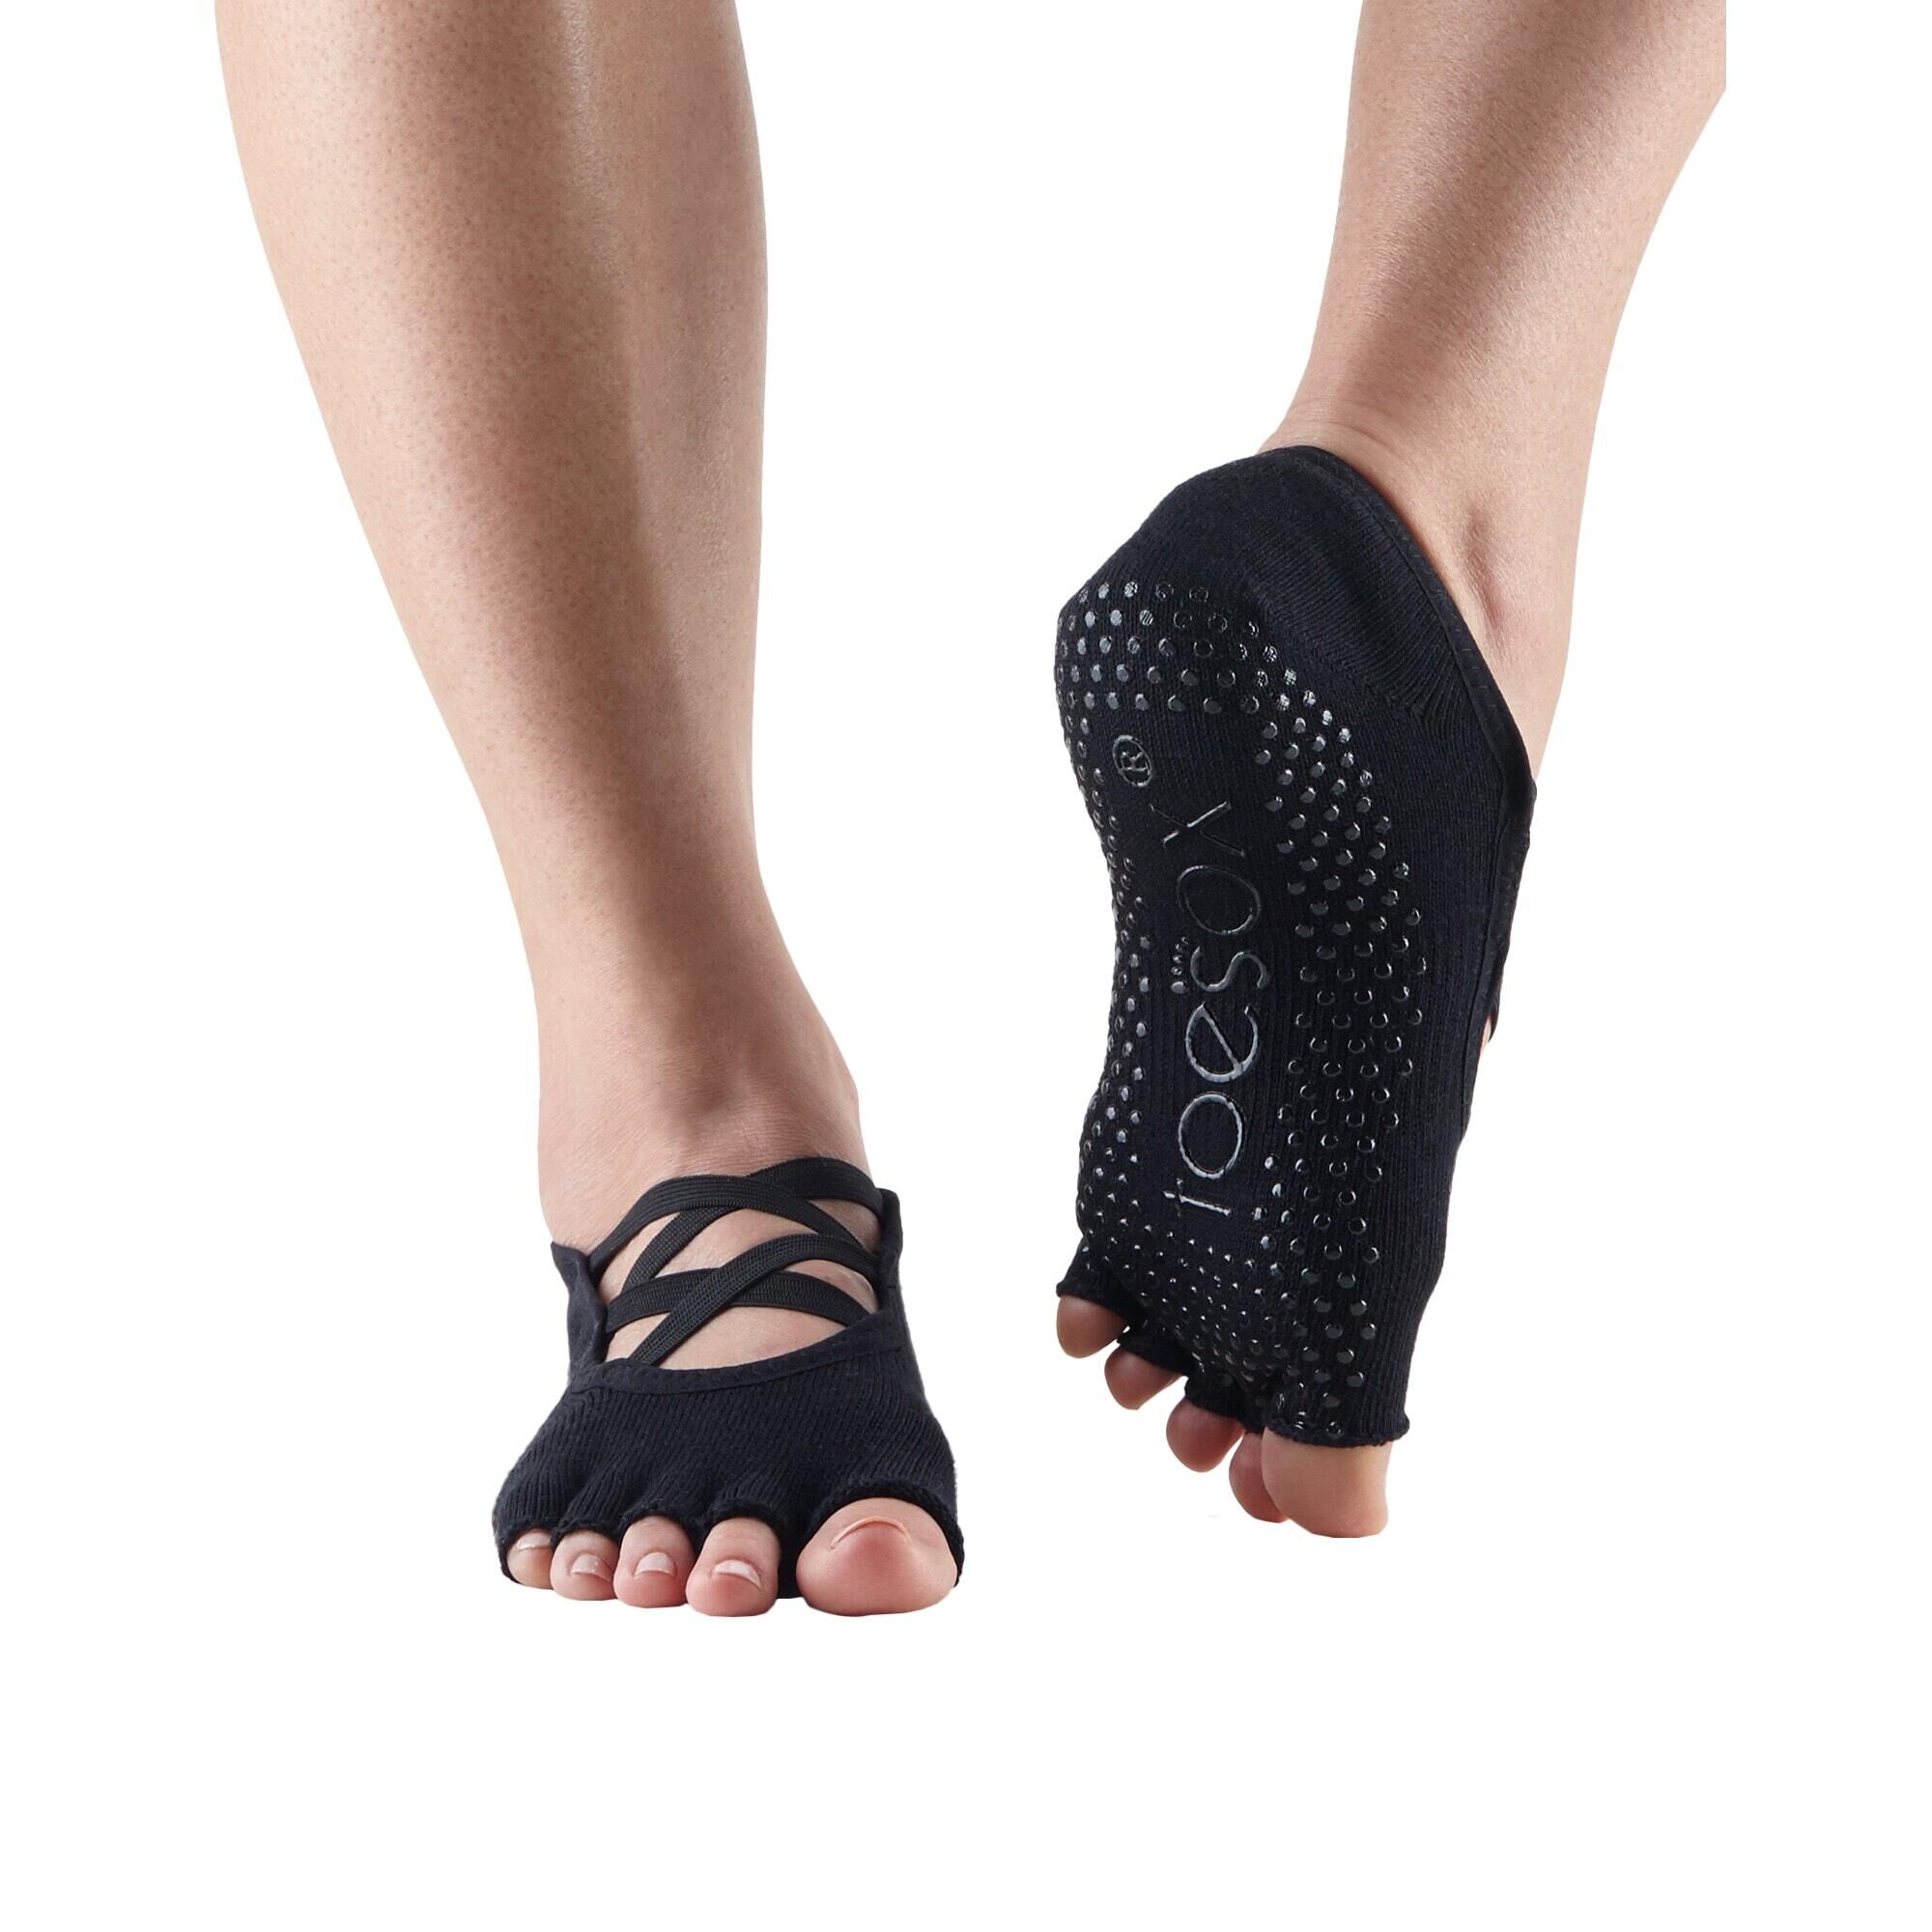 FITNESS-MAD Womens/Ladies Elle Gripped Half Toe Socks (Black)